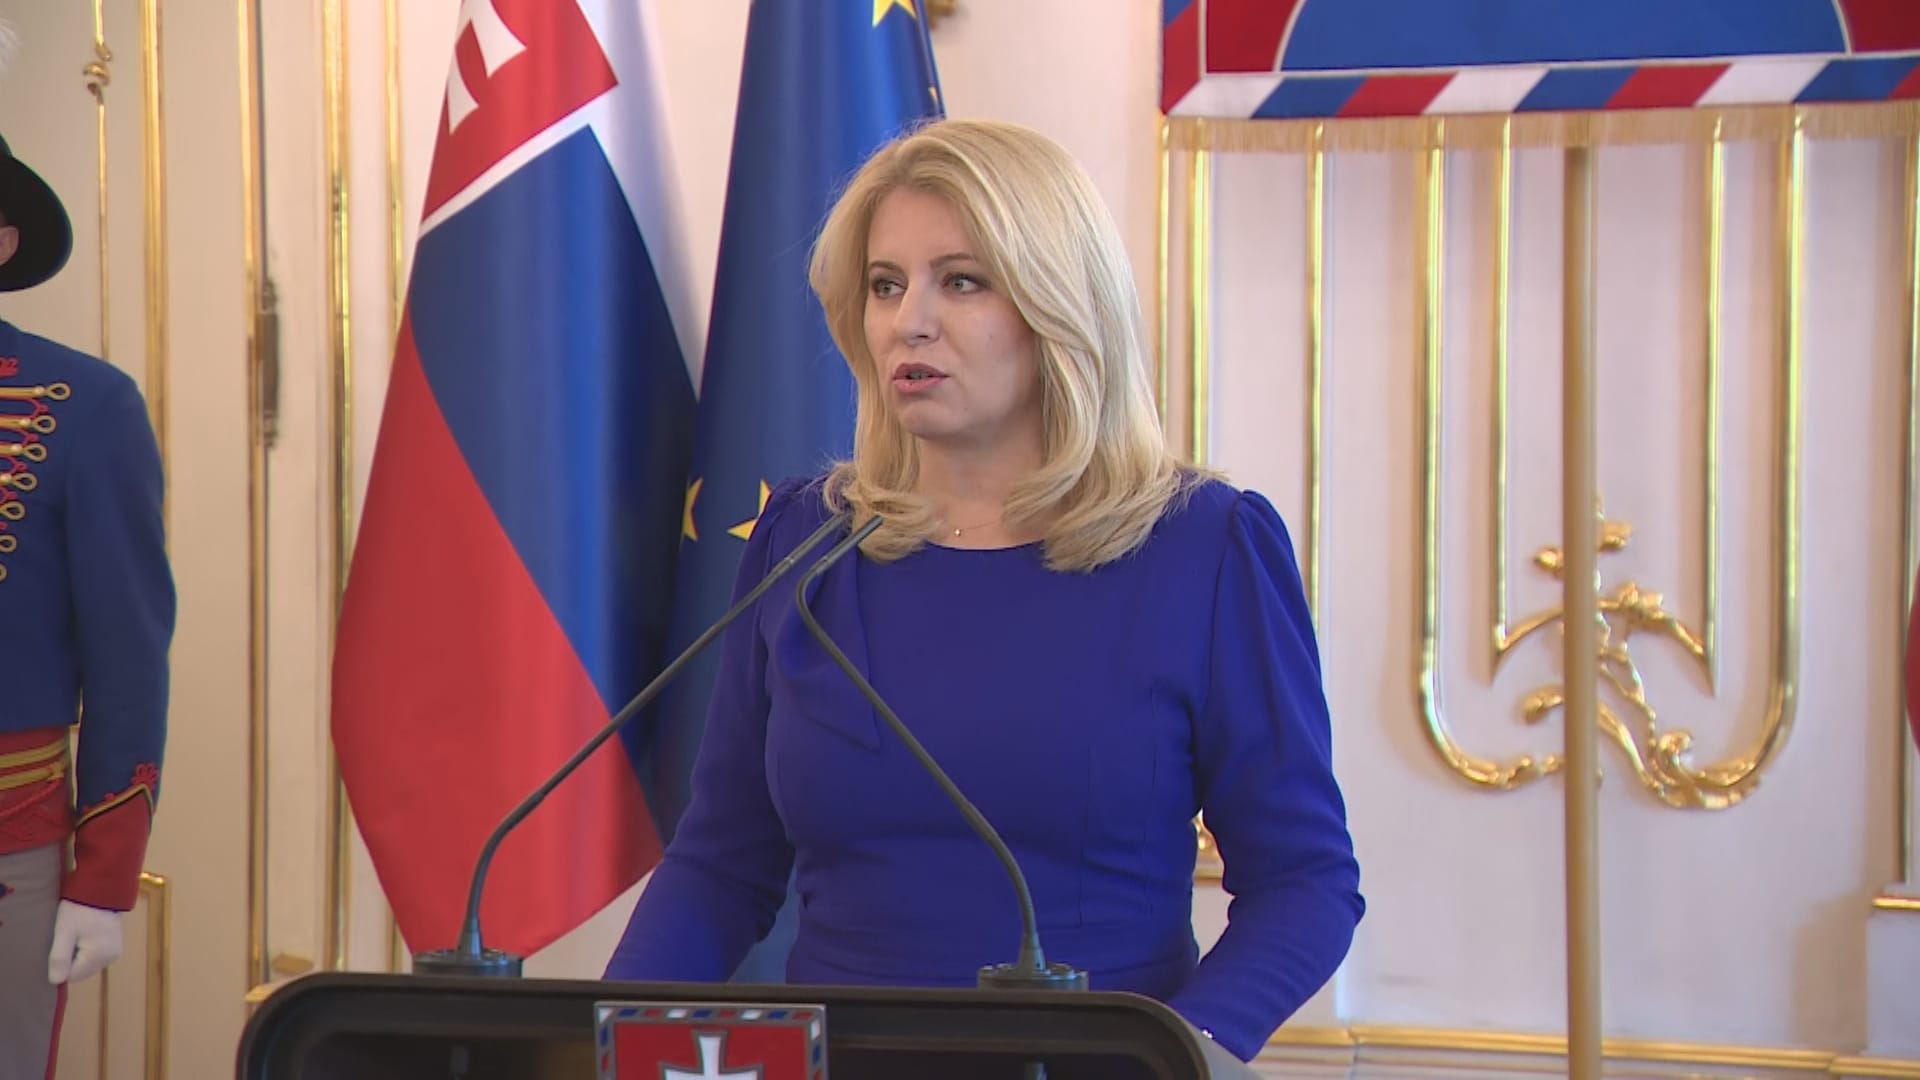 Slovenská prezidentka Zuzana Čaputová má k sestavované vládě Roberta Fica výhrady a do funkce ministra životního prostředí odmítá jmenovat Rudolfa Huliaka ze SNS.